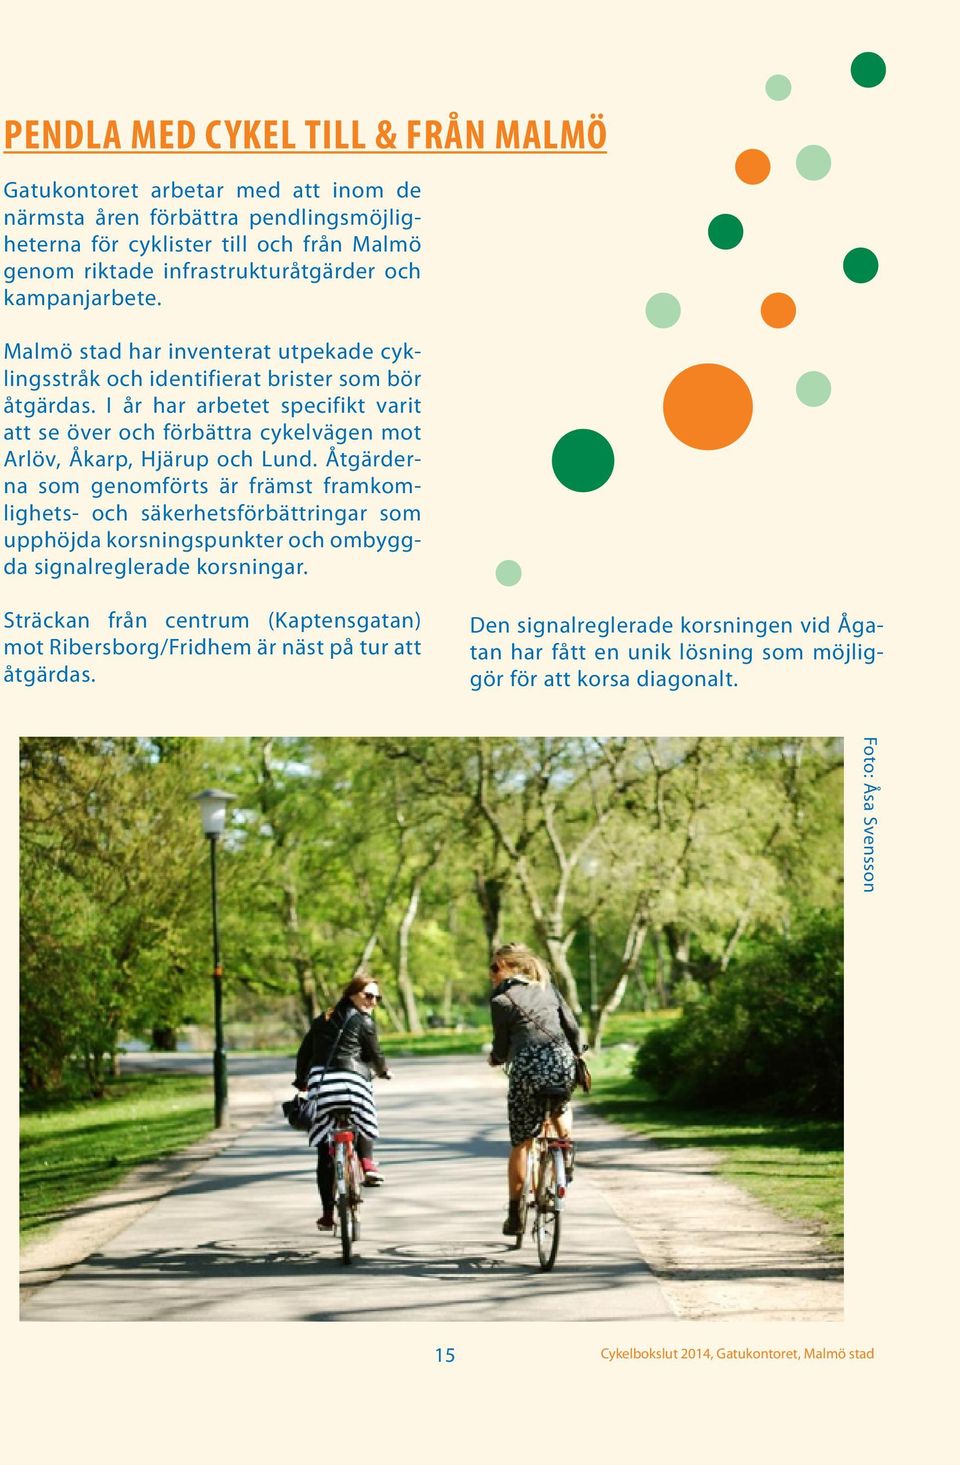 I år har arbetet specifikt varit att se över och förbättra cykelvägen mot Arlöv, Åkarp, Hjärup och Lund.